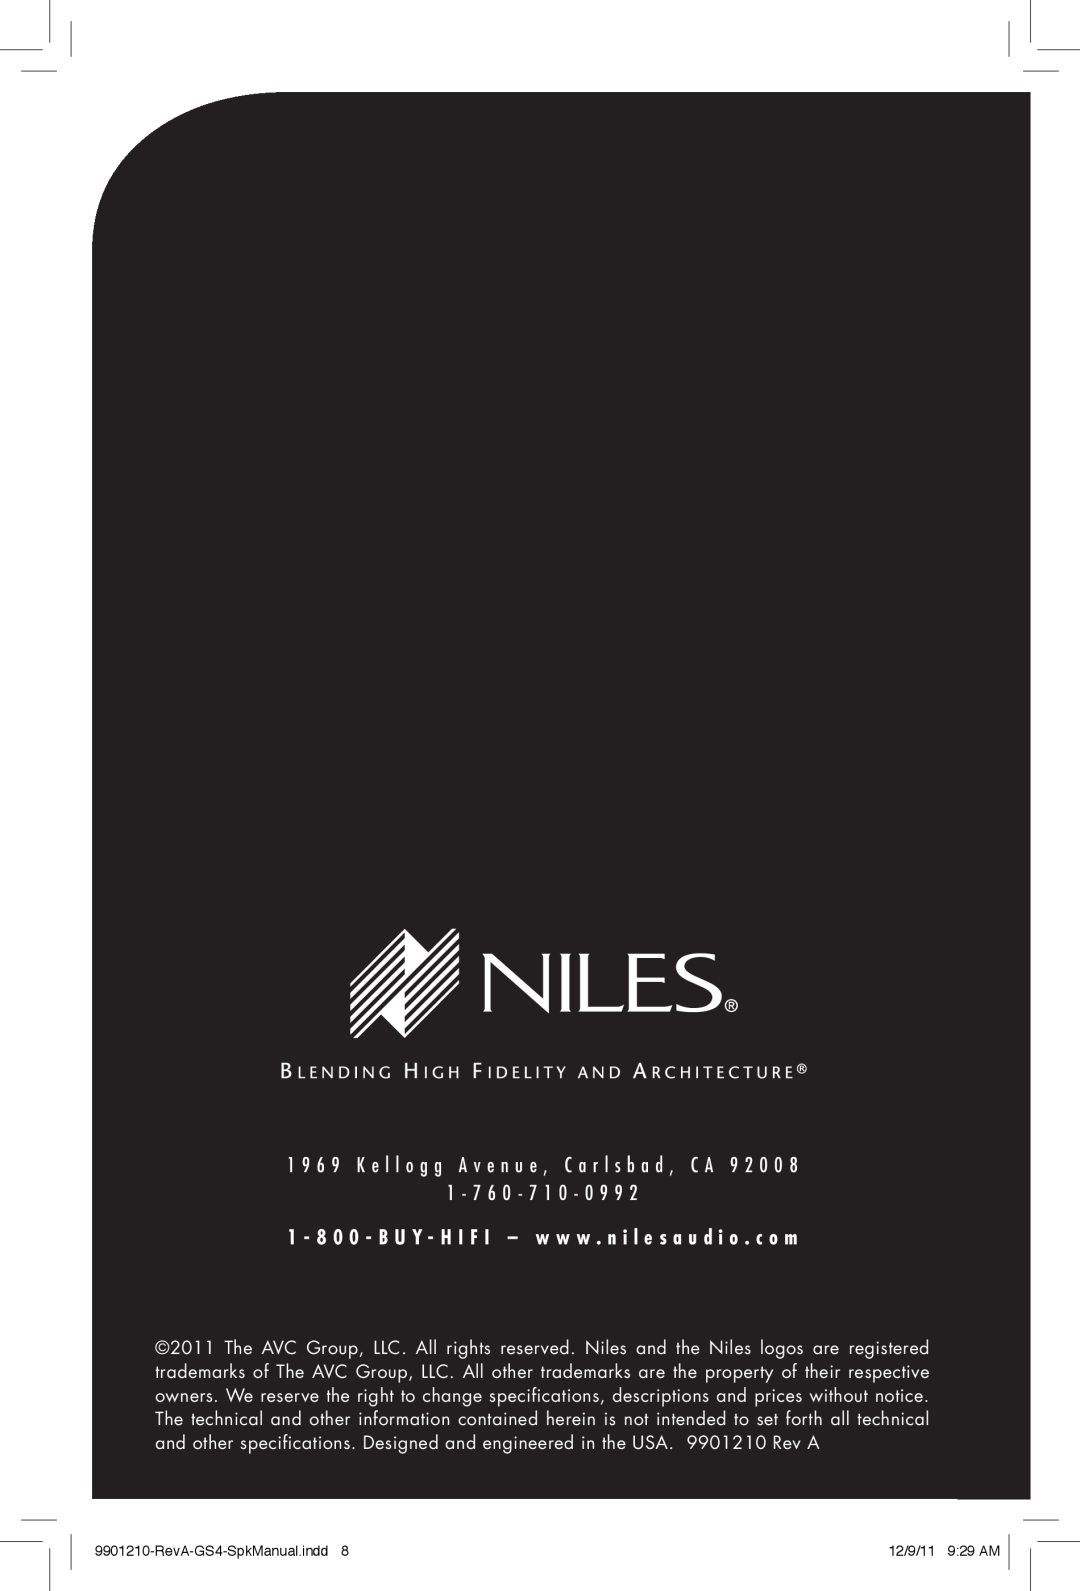 Niles Audio manual 1 - 7 6 0 - 7 1 0, RevA-GS4-SpkManual.indd8, 12/9/11 9 29 AM 